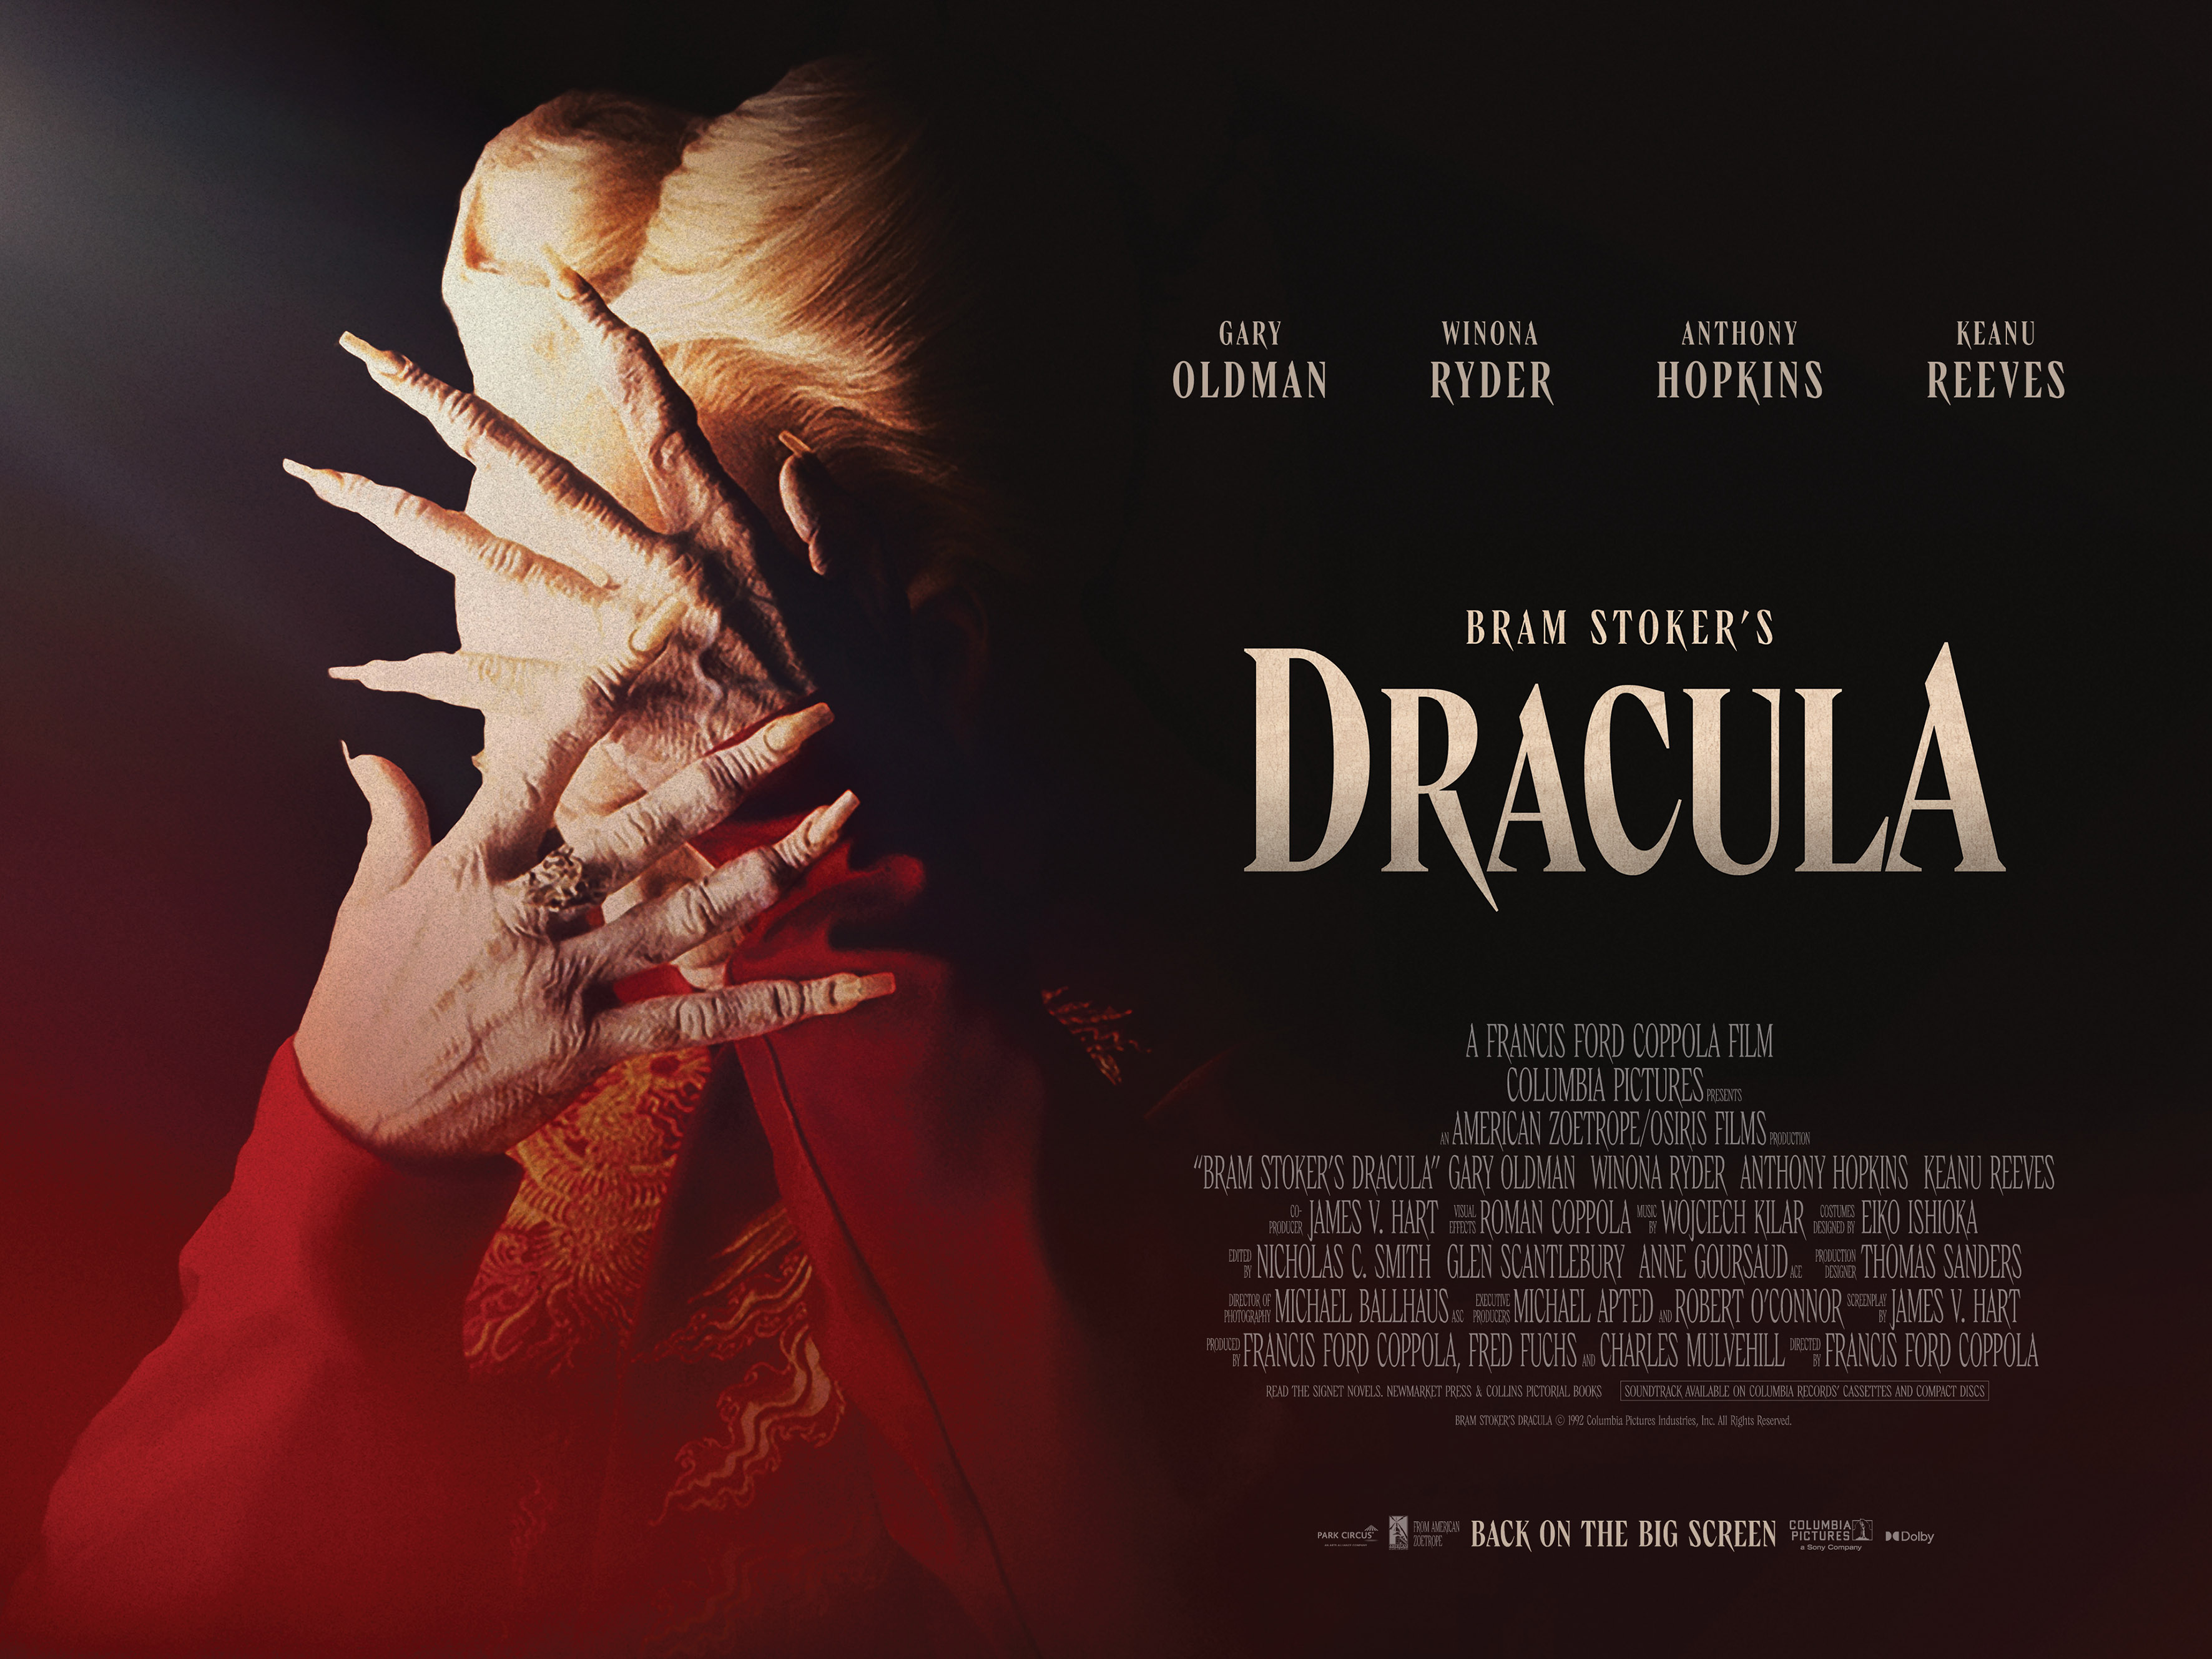 Bram Stoker´s Dracula